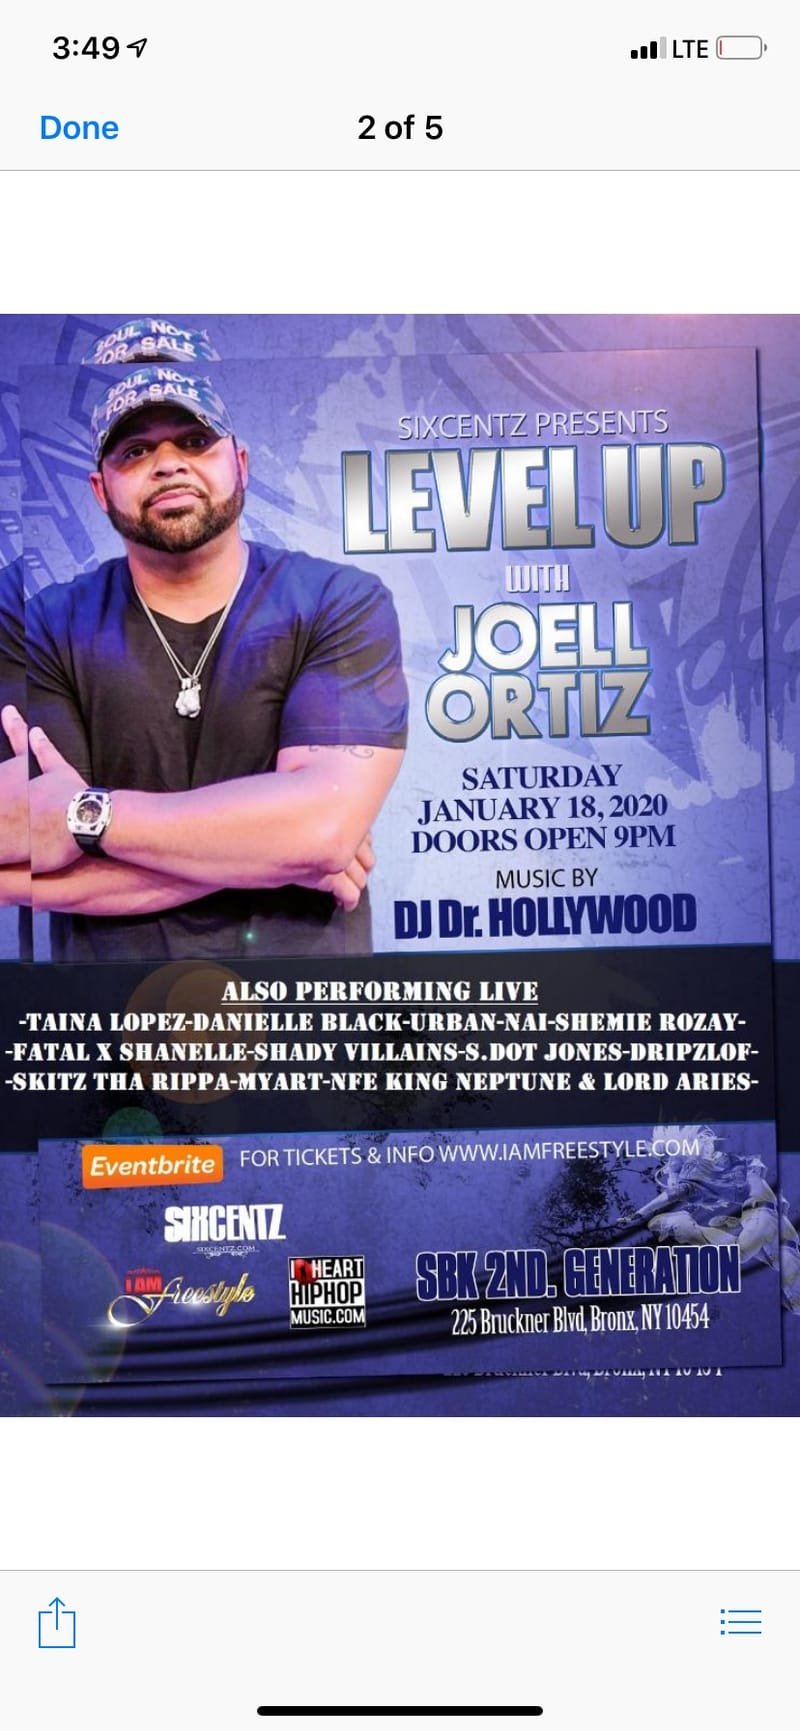 Sixtentz Presents Level Up with Joel Ortiz